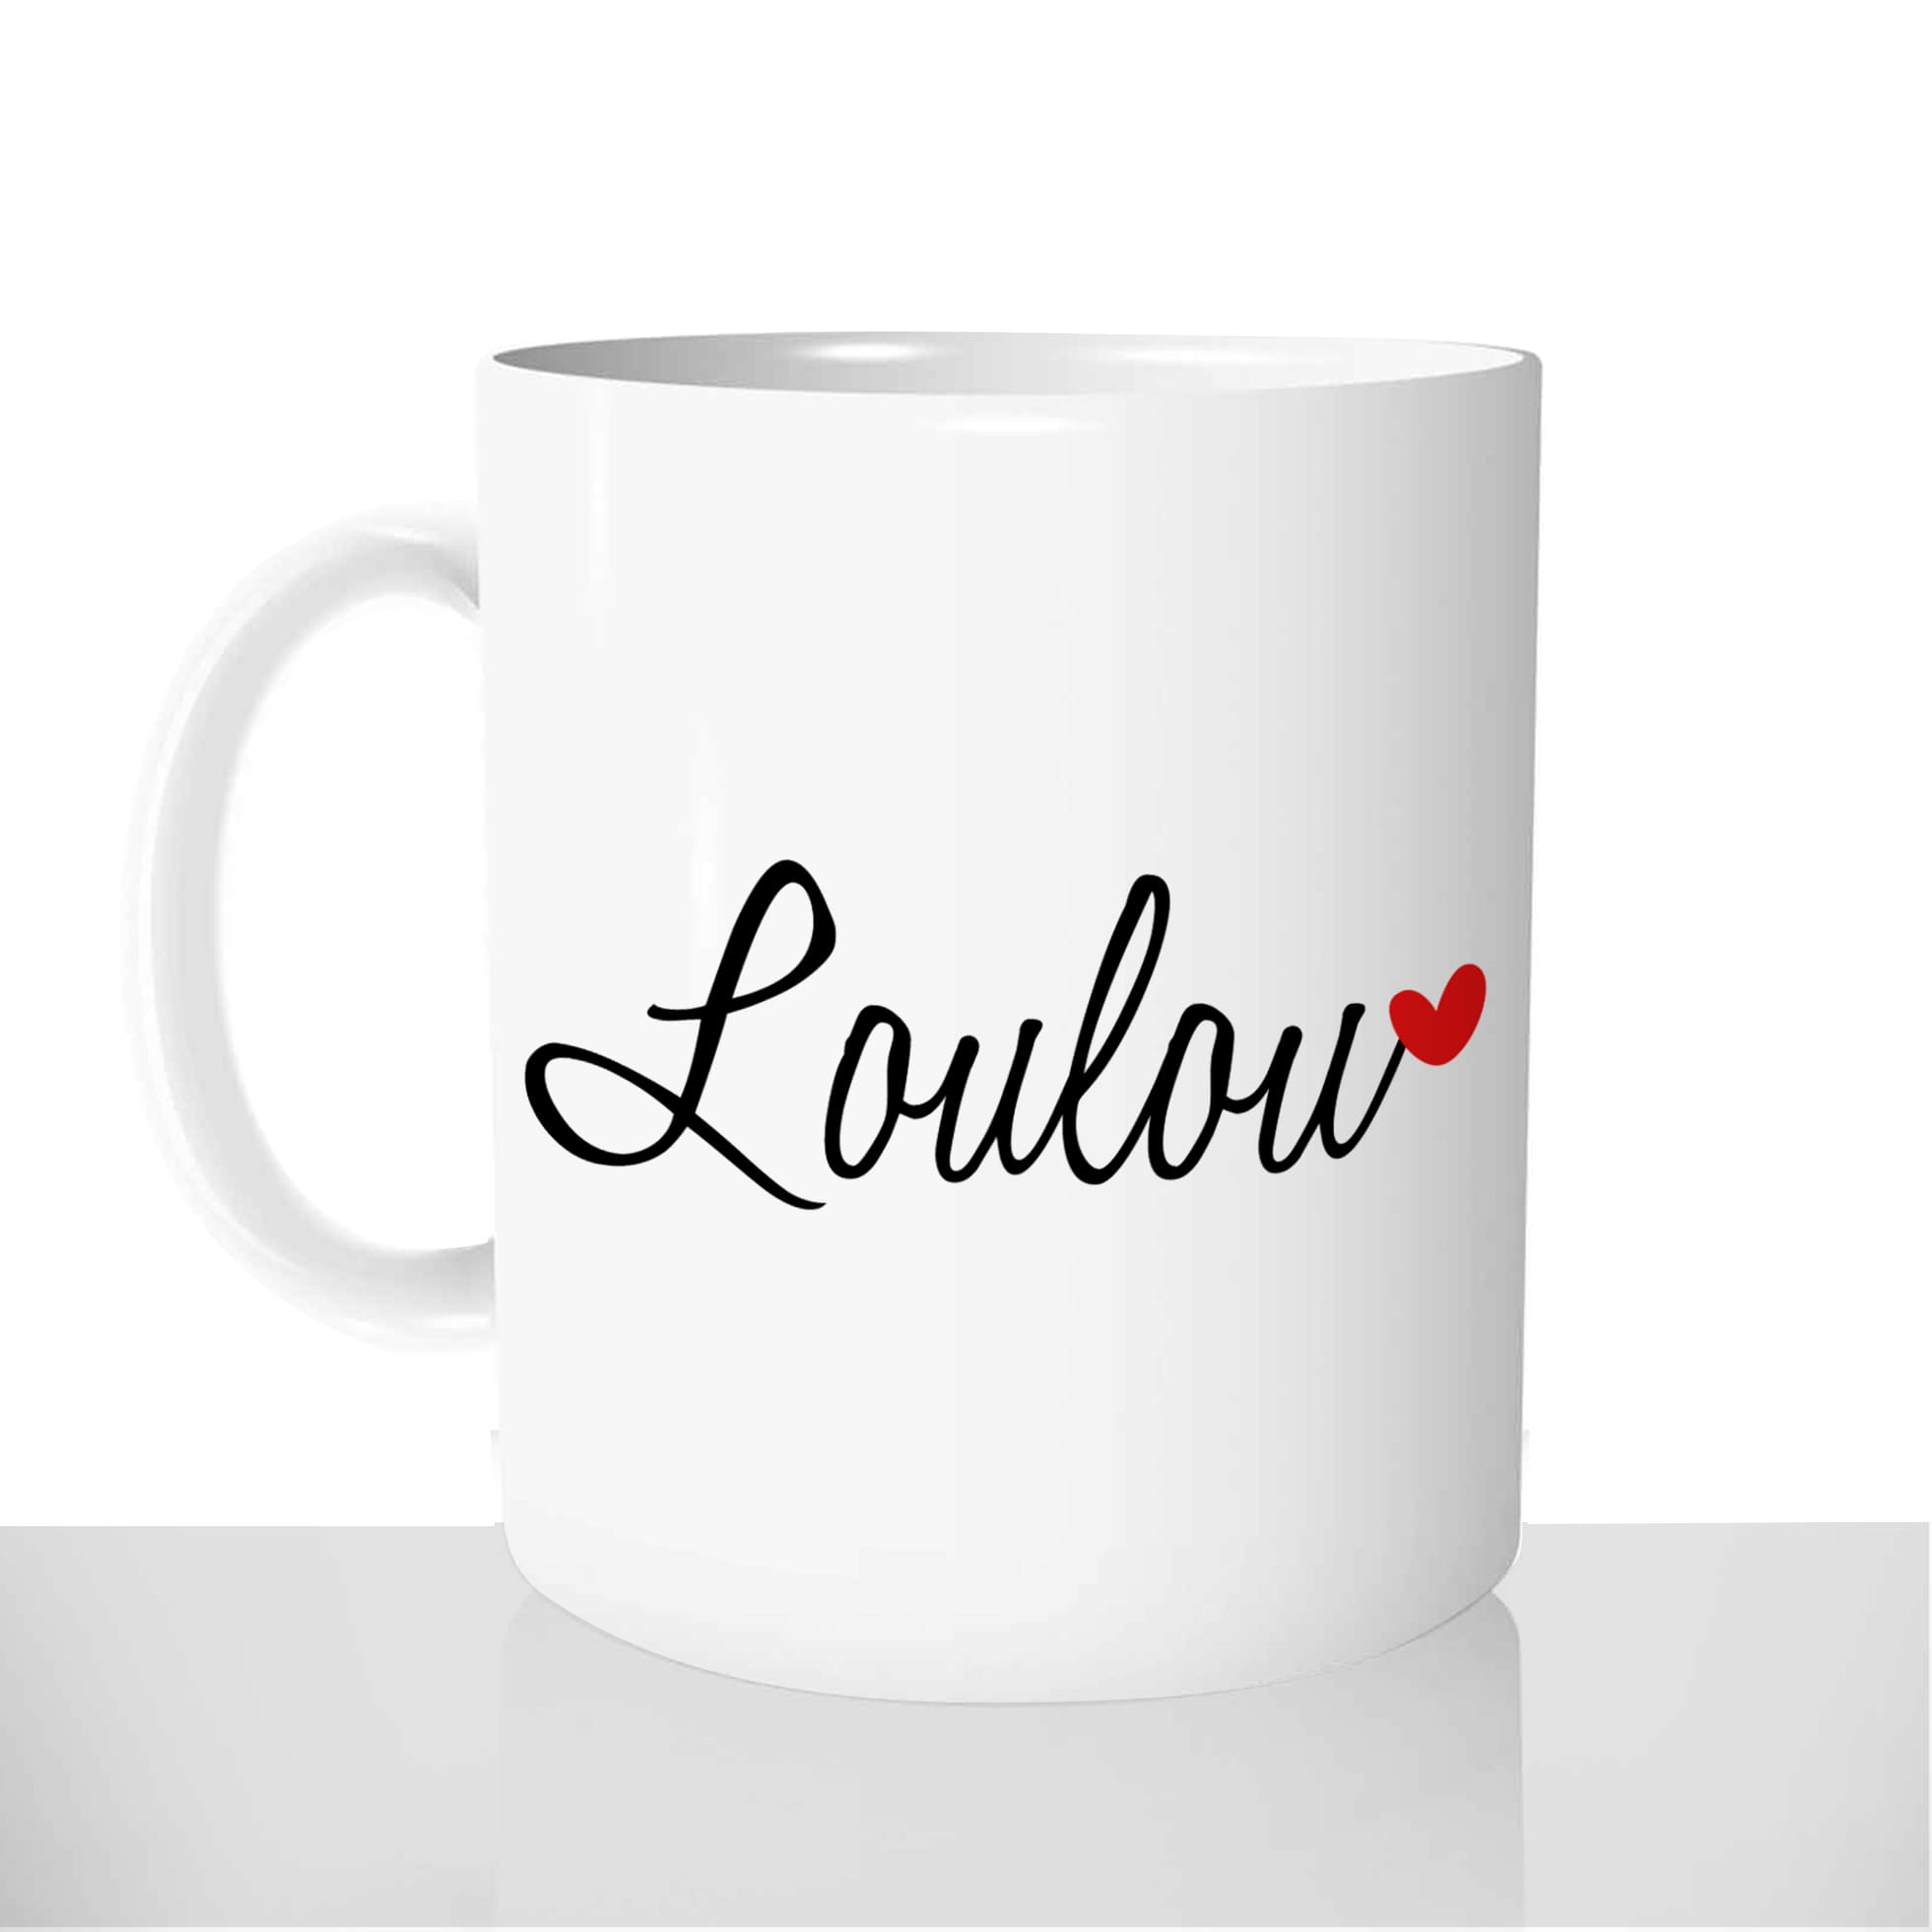 mug-blanc-céramique-personnalisable-tasse-11oz-loulou-coeur-amour-couple-saint-valentin-personnalisé-fun-idée-cadeau-original